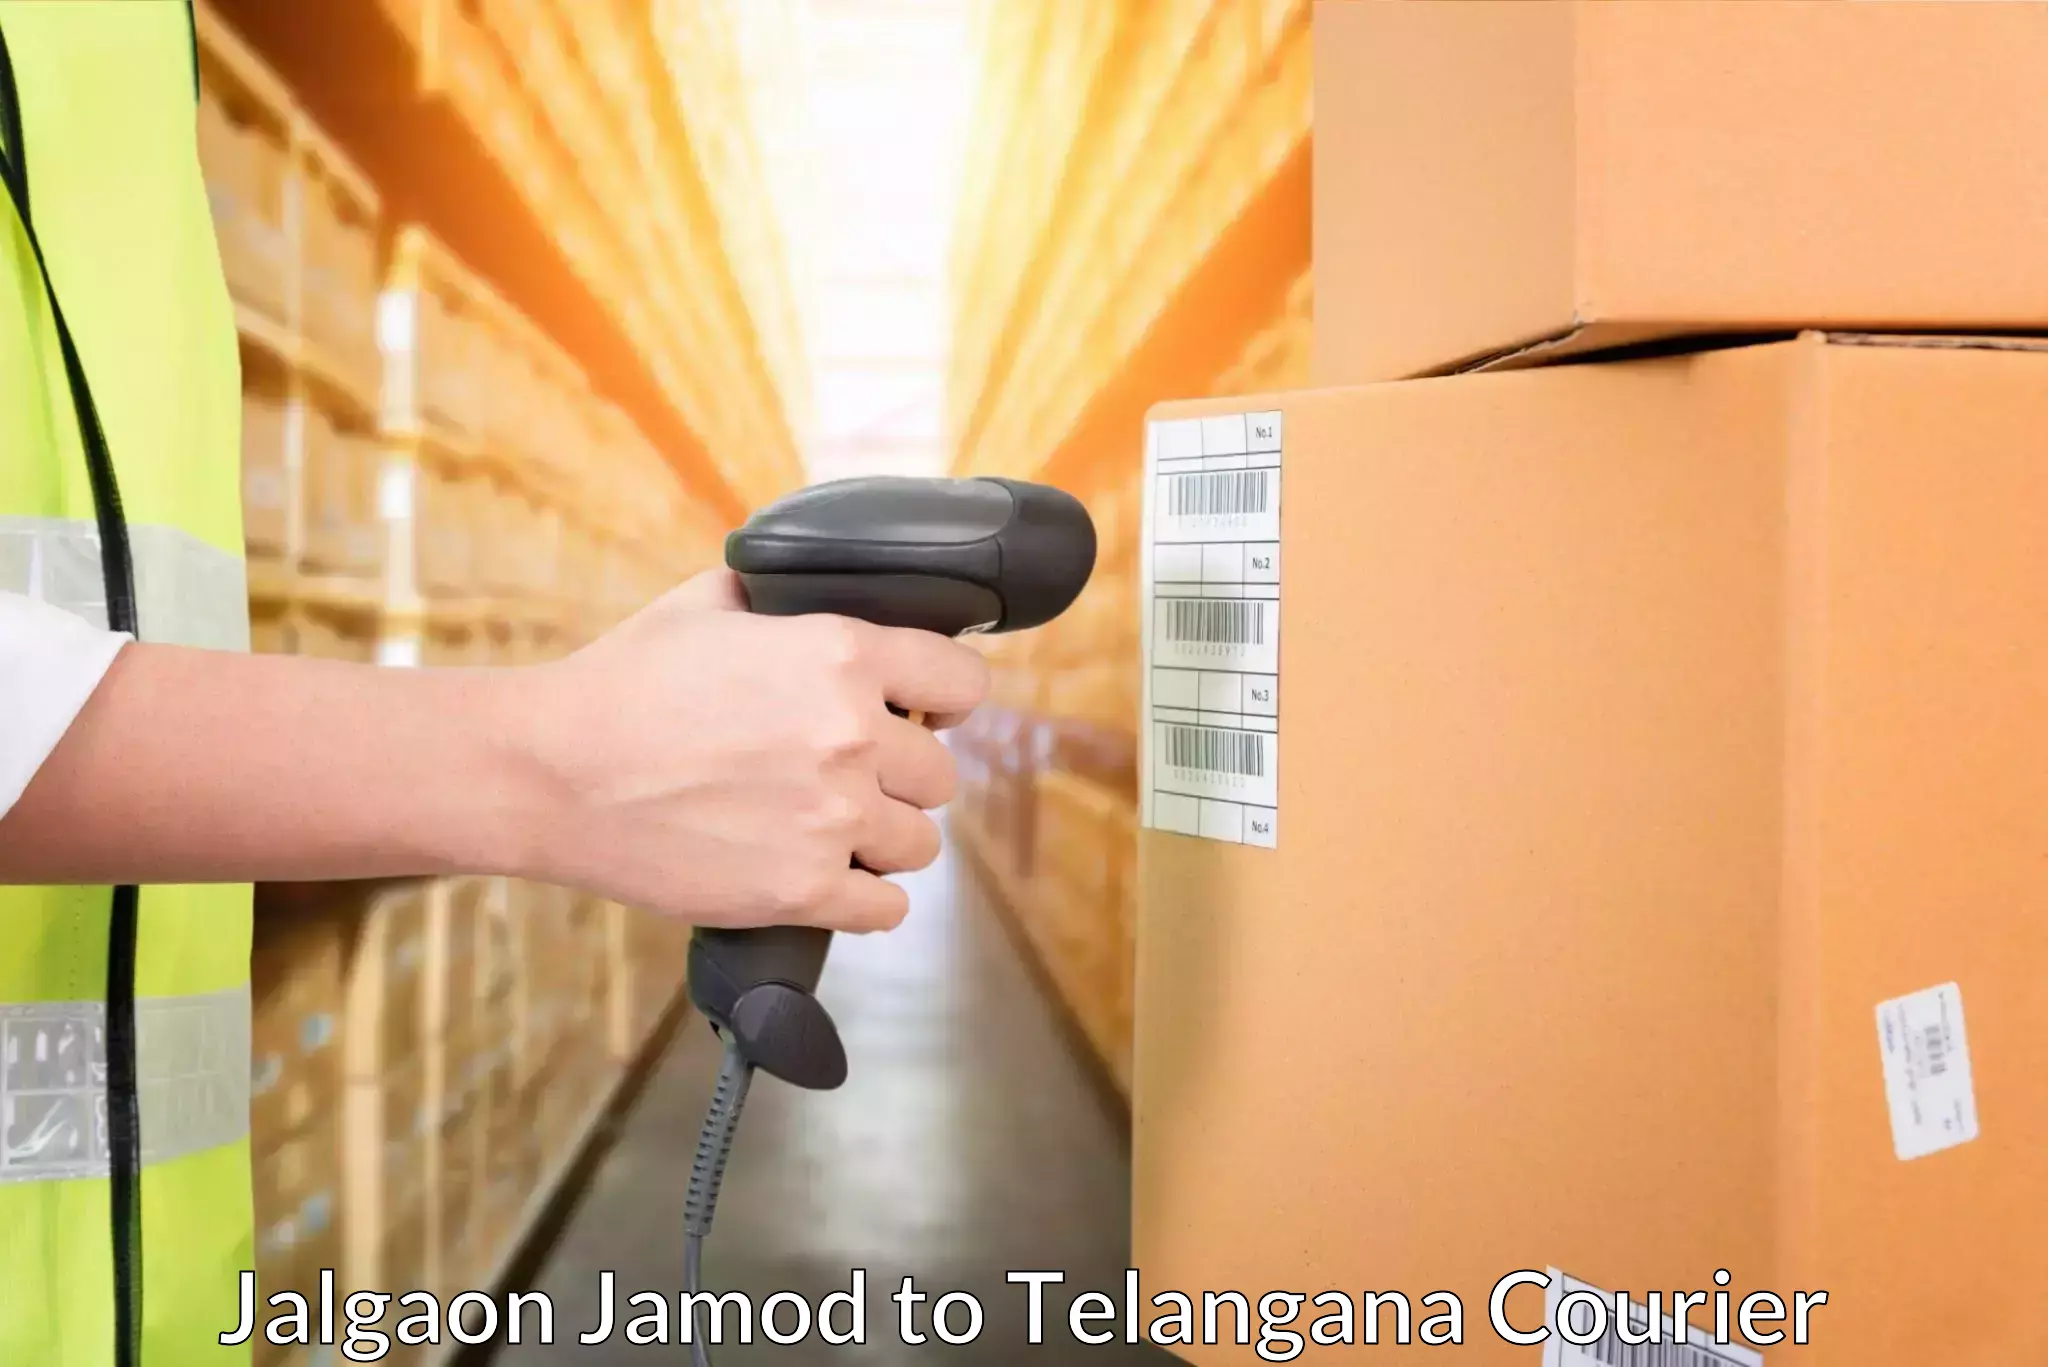 Advanced logistics management Jalgaon Jamod to Cheyyur